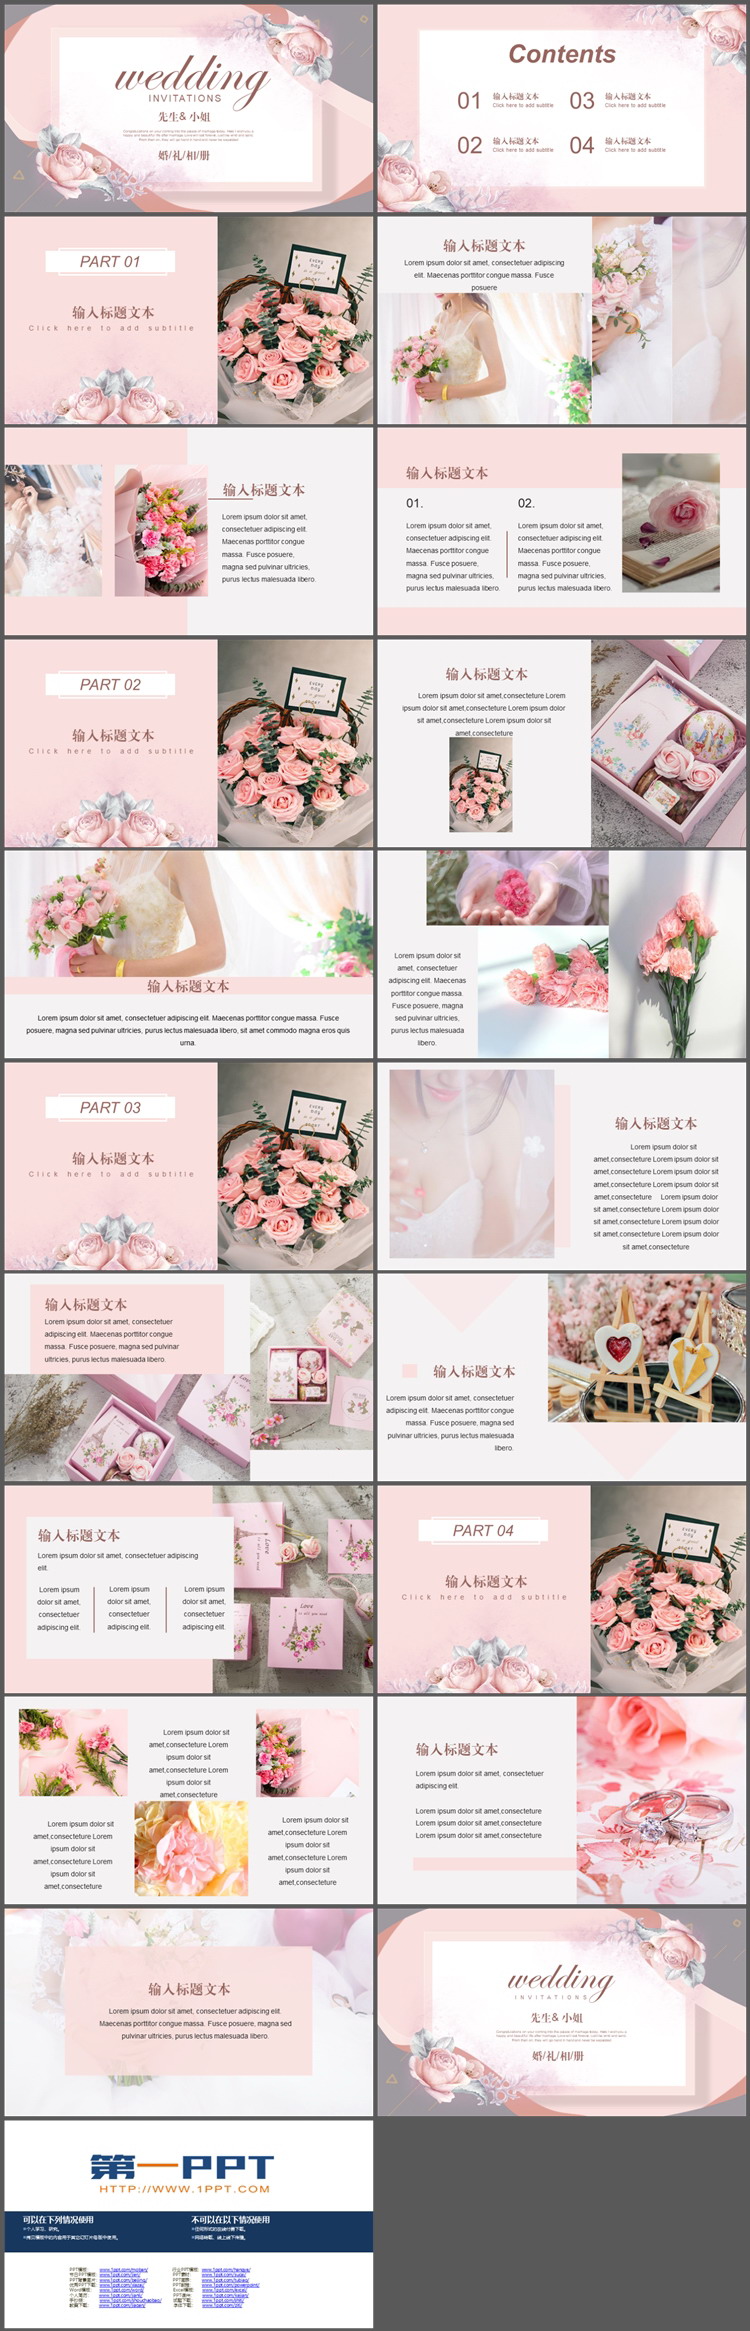 粉色花朵背景的浪漫婚礼电子相册PPT模板